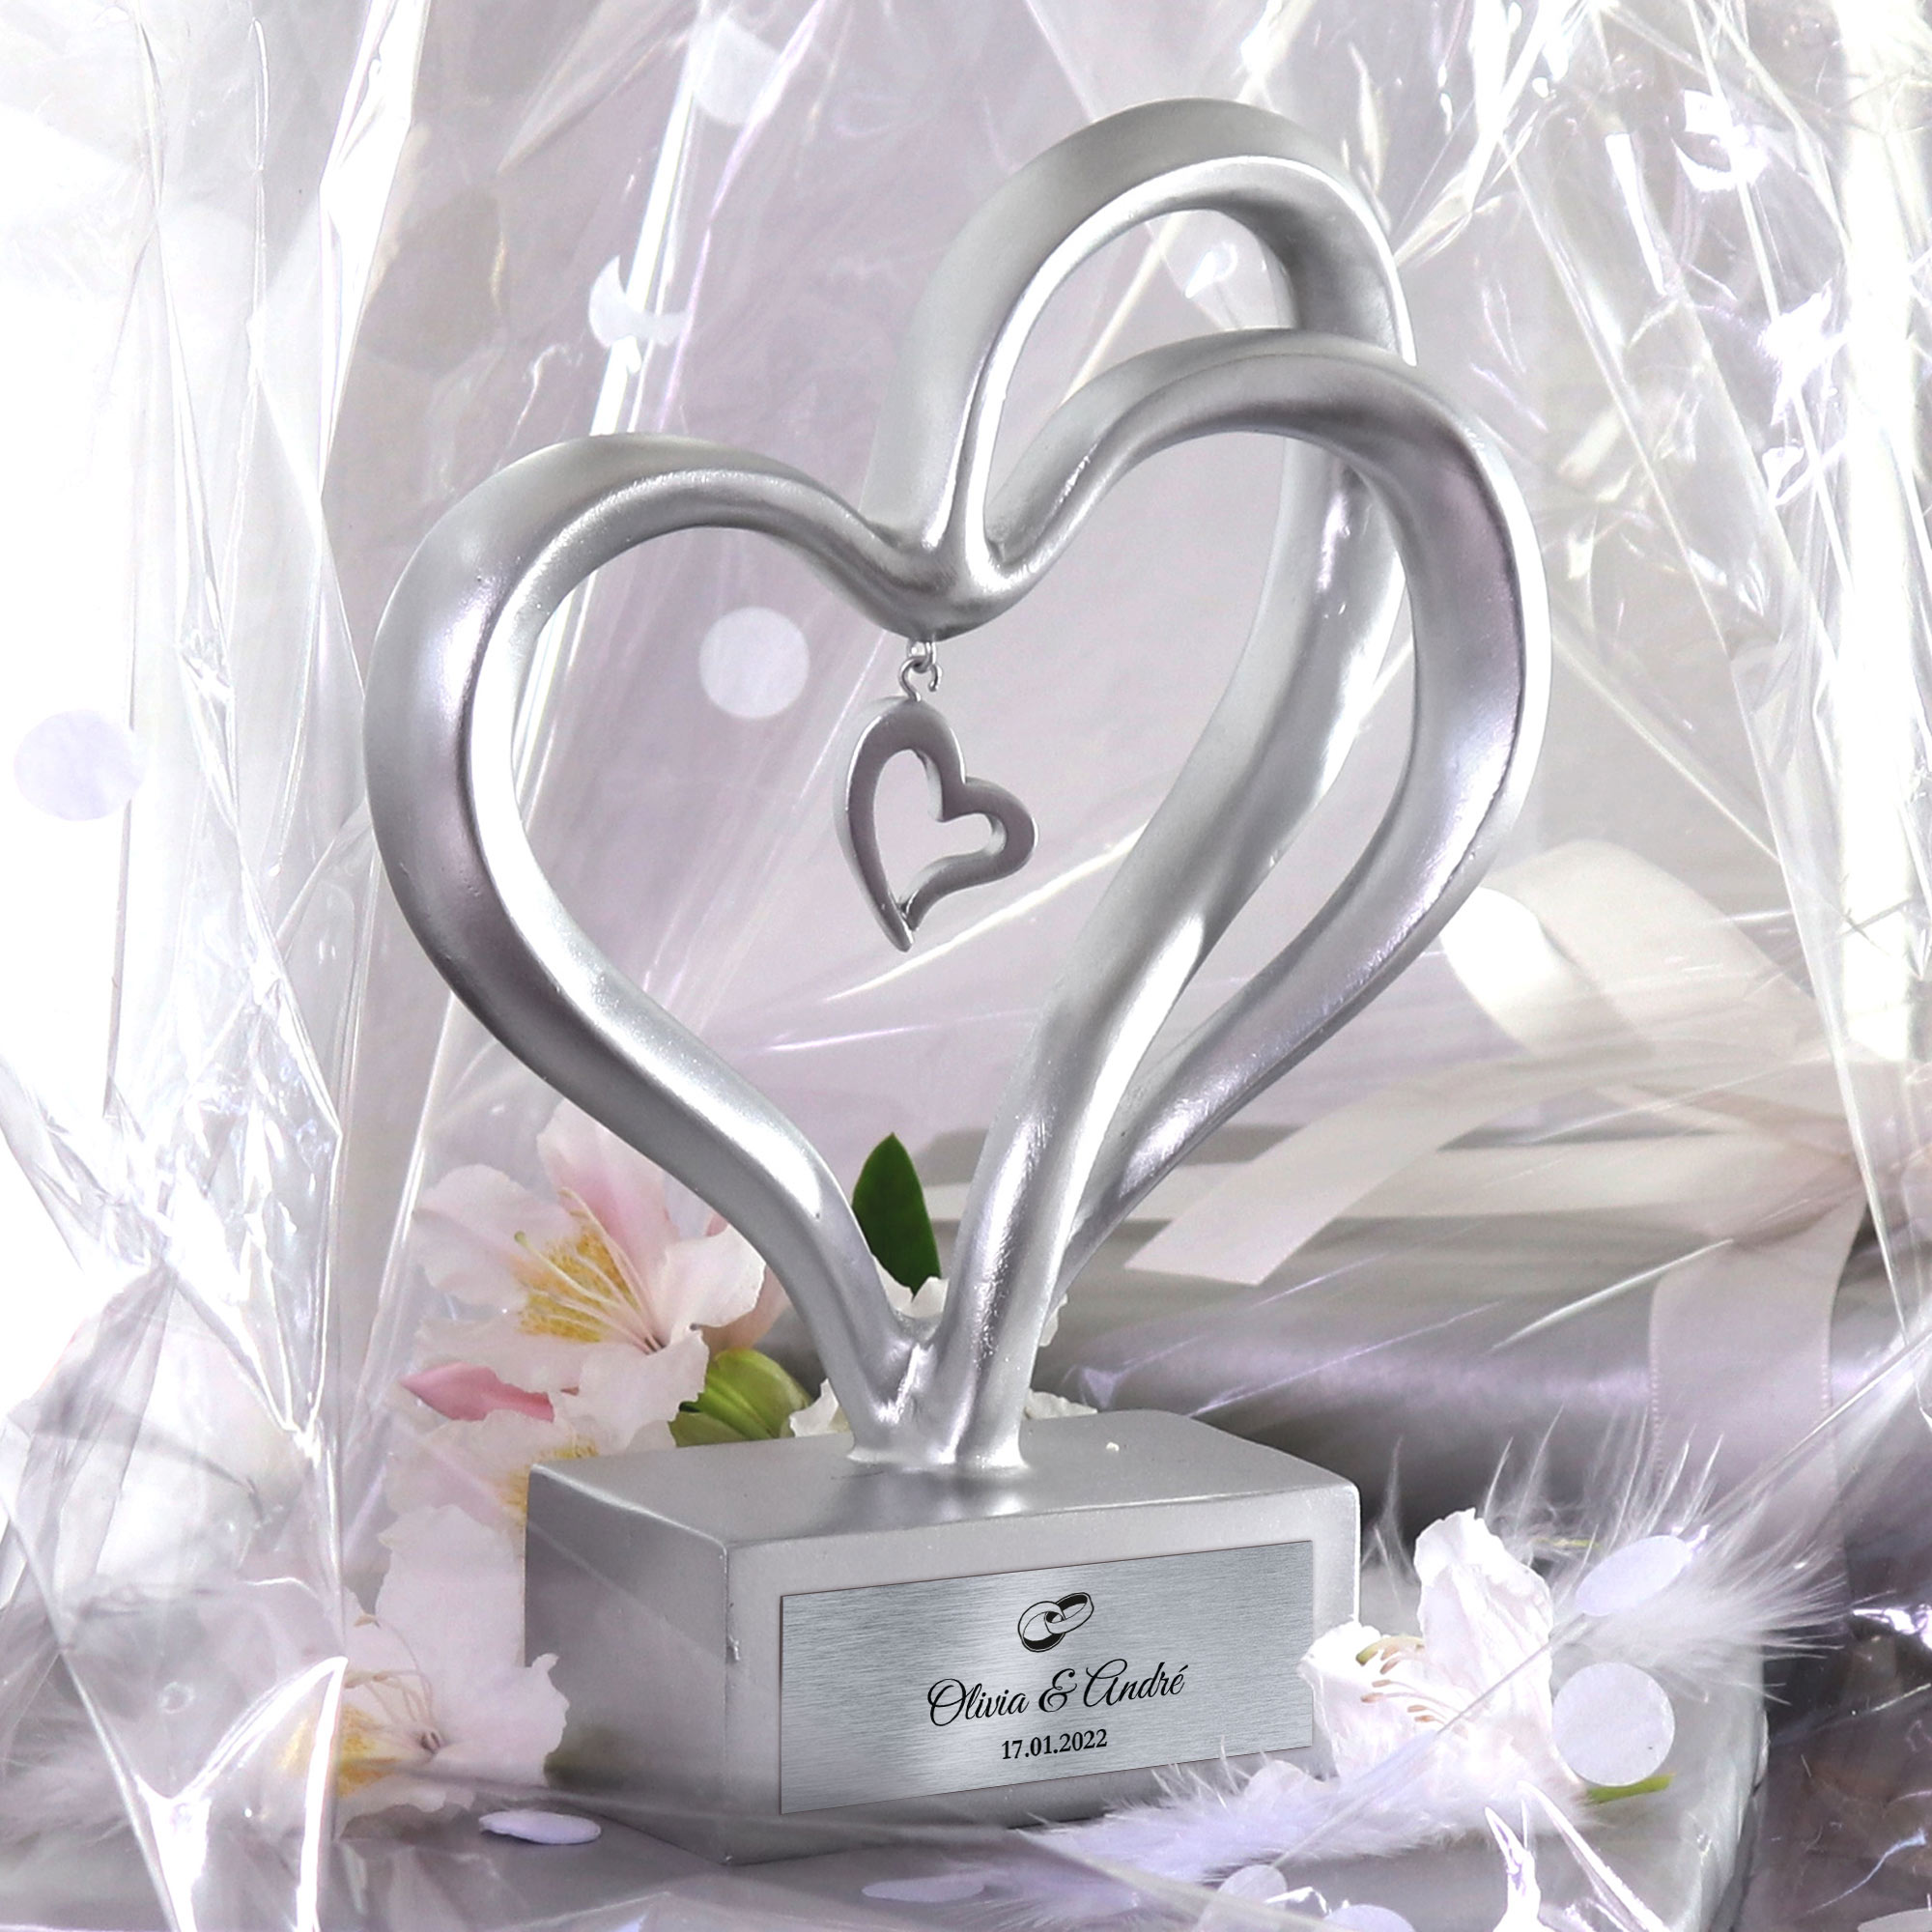 Dekofigur in verschlungener Herzform, Gravierte Deko Skulptur mit Namen und Hochzeitsdatum, Herz Deko mit Ringmotiv als Hochzeitsgeschenk